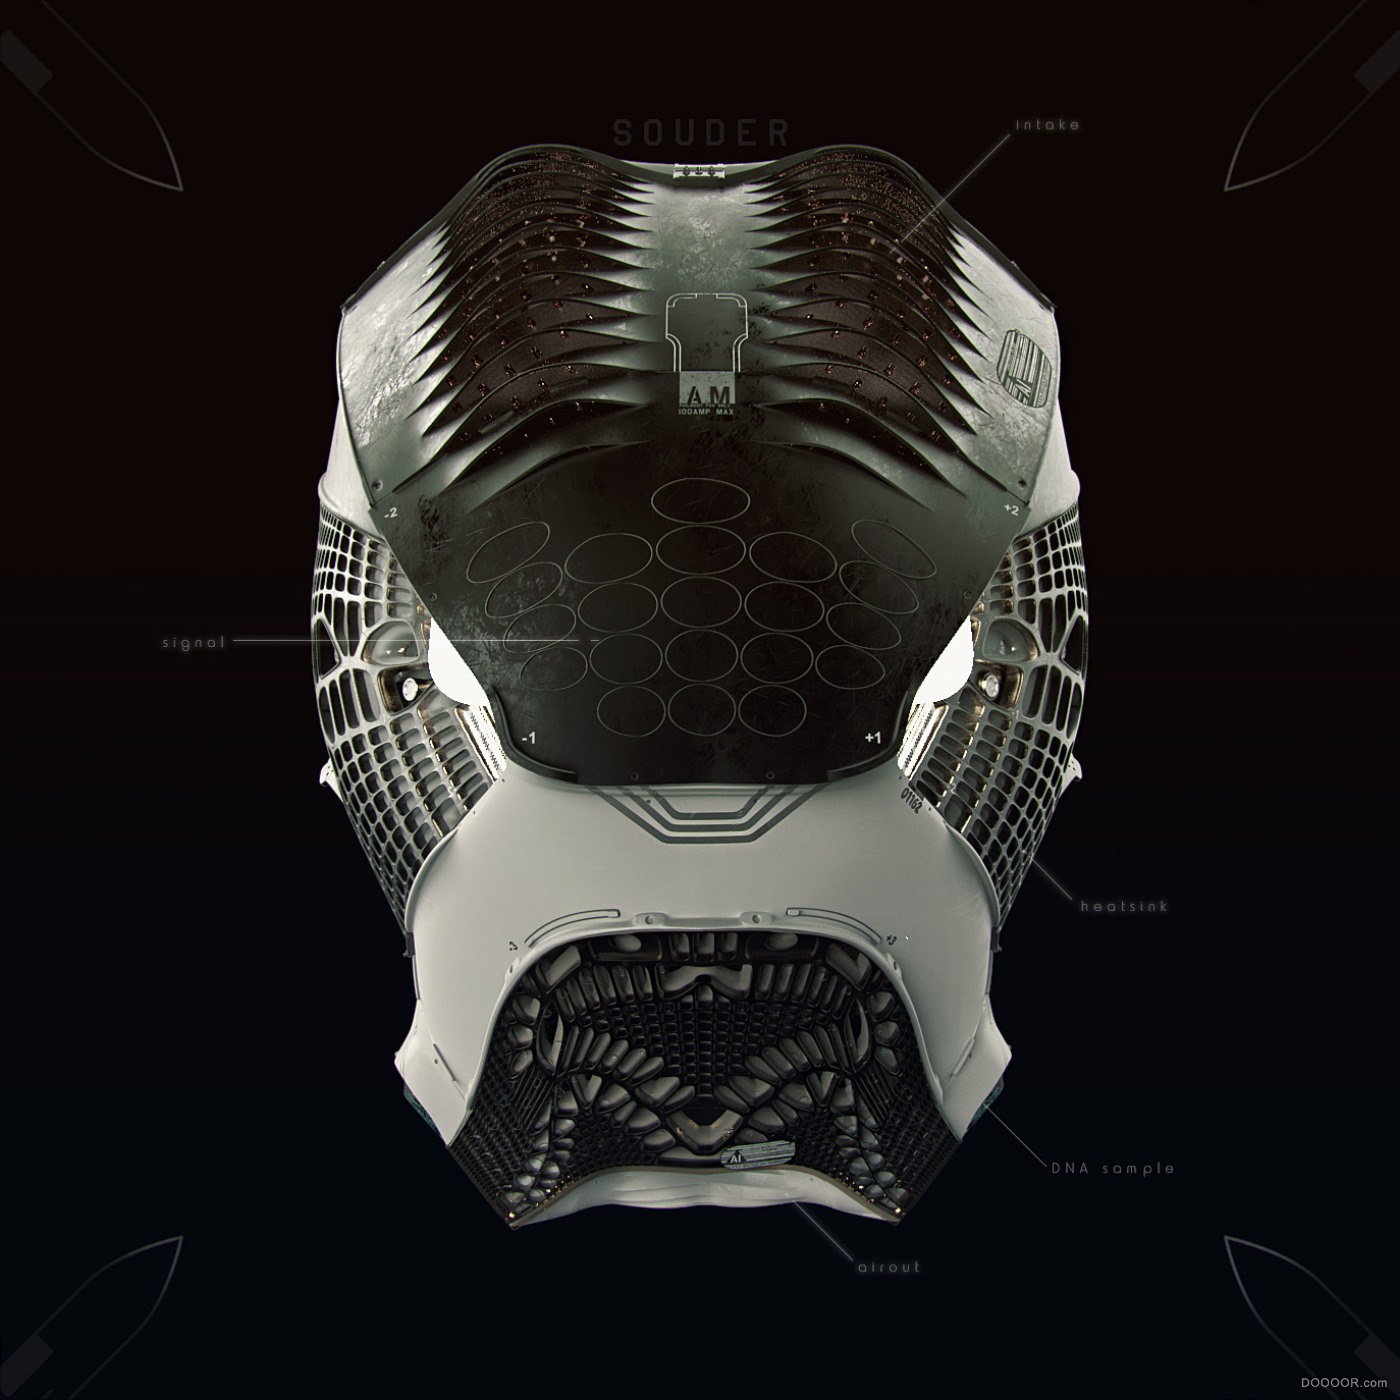 头盔&amp;战甲&amp;机器人设计-美国Lee Souder [36P] (9).jpg